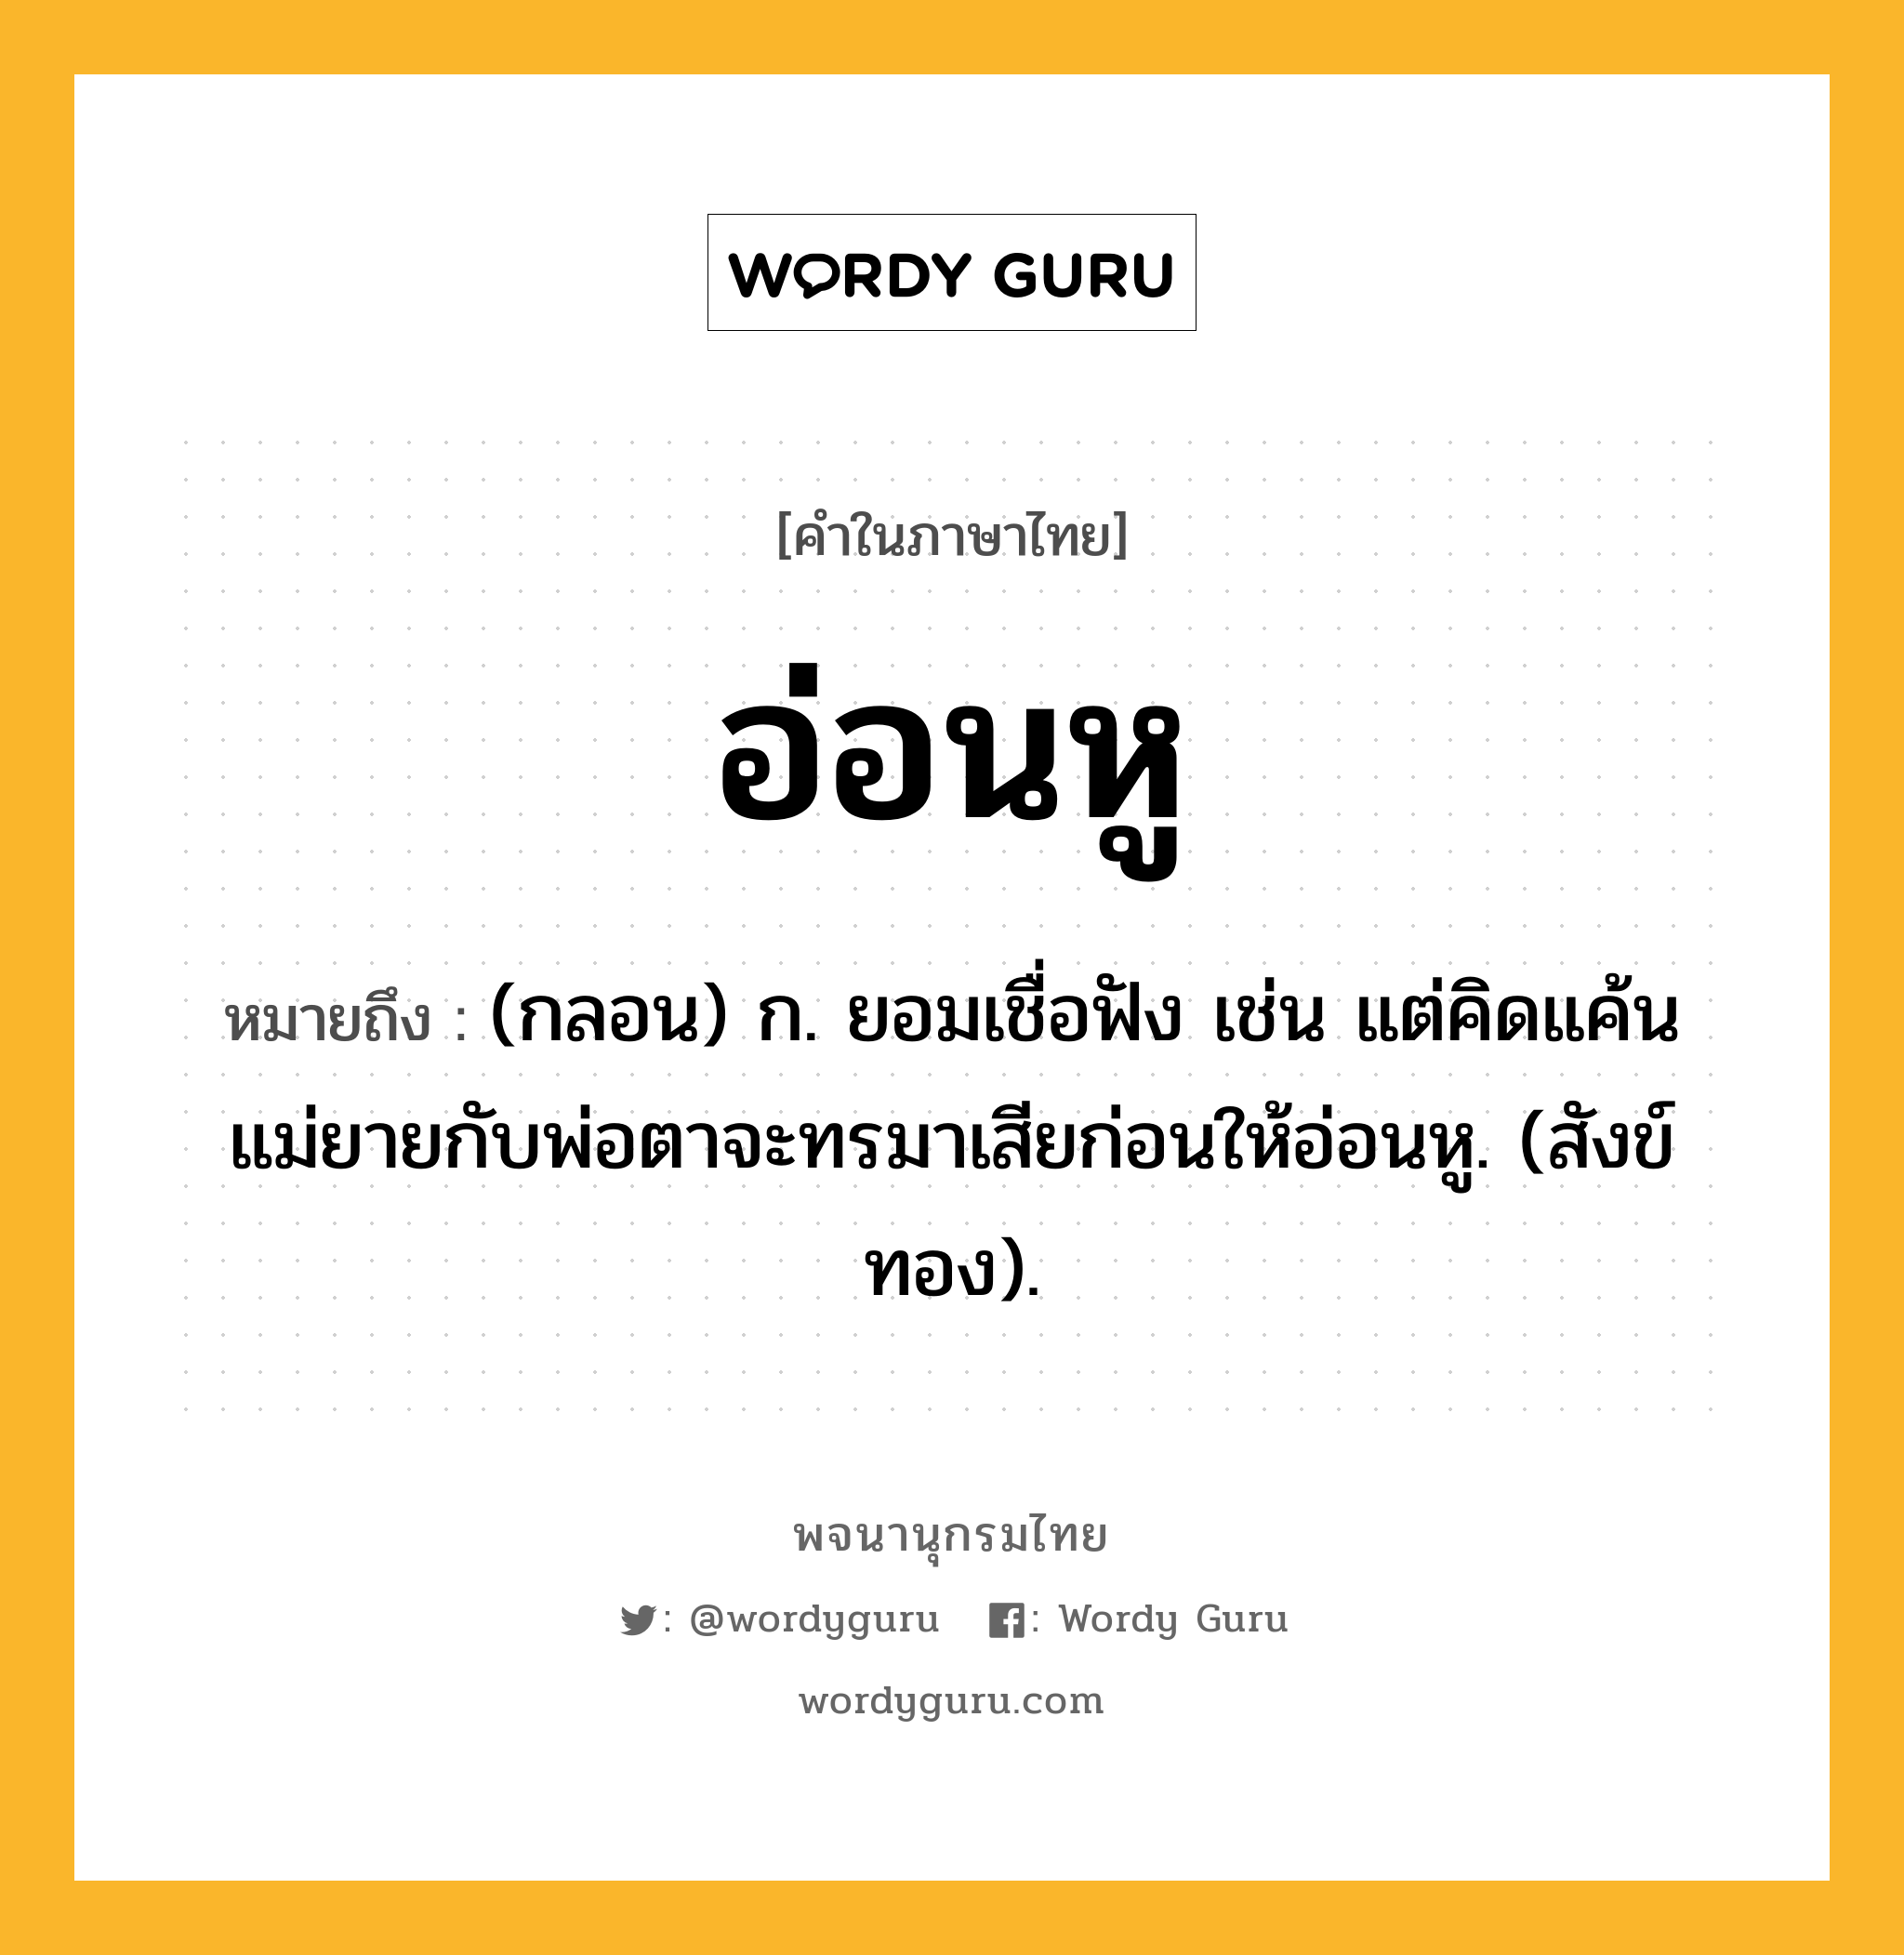 อ่อนหู หมายถึงอะไร?, คำในภาษาไทย อ่อนหู หมายถึง (กลอน) ก. ยอมเชื่อฟัง เช่น แต่คิดแค้นแม่ยายกับพ่อตาจะทรมาเสียก่อนให้อ่อนหู. (สังข์ทอง).